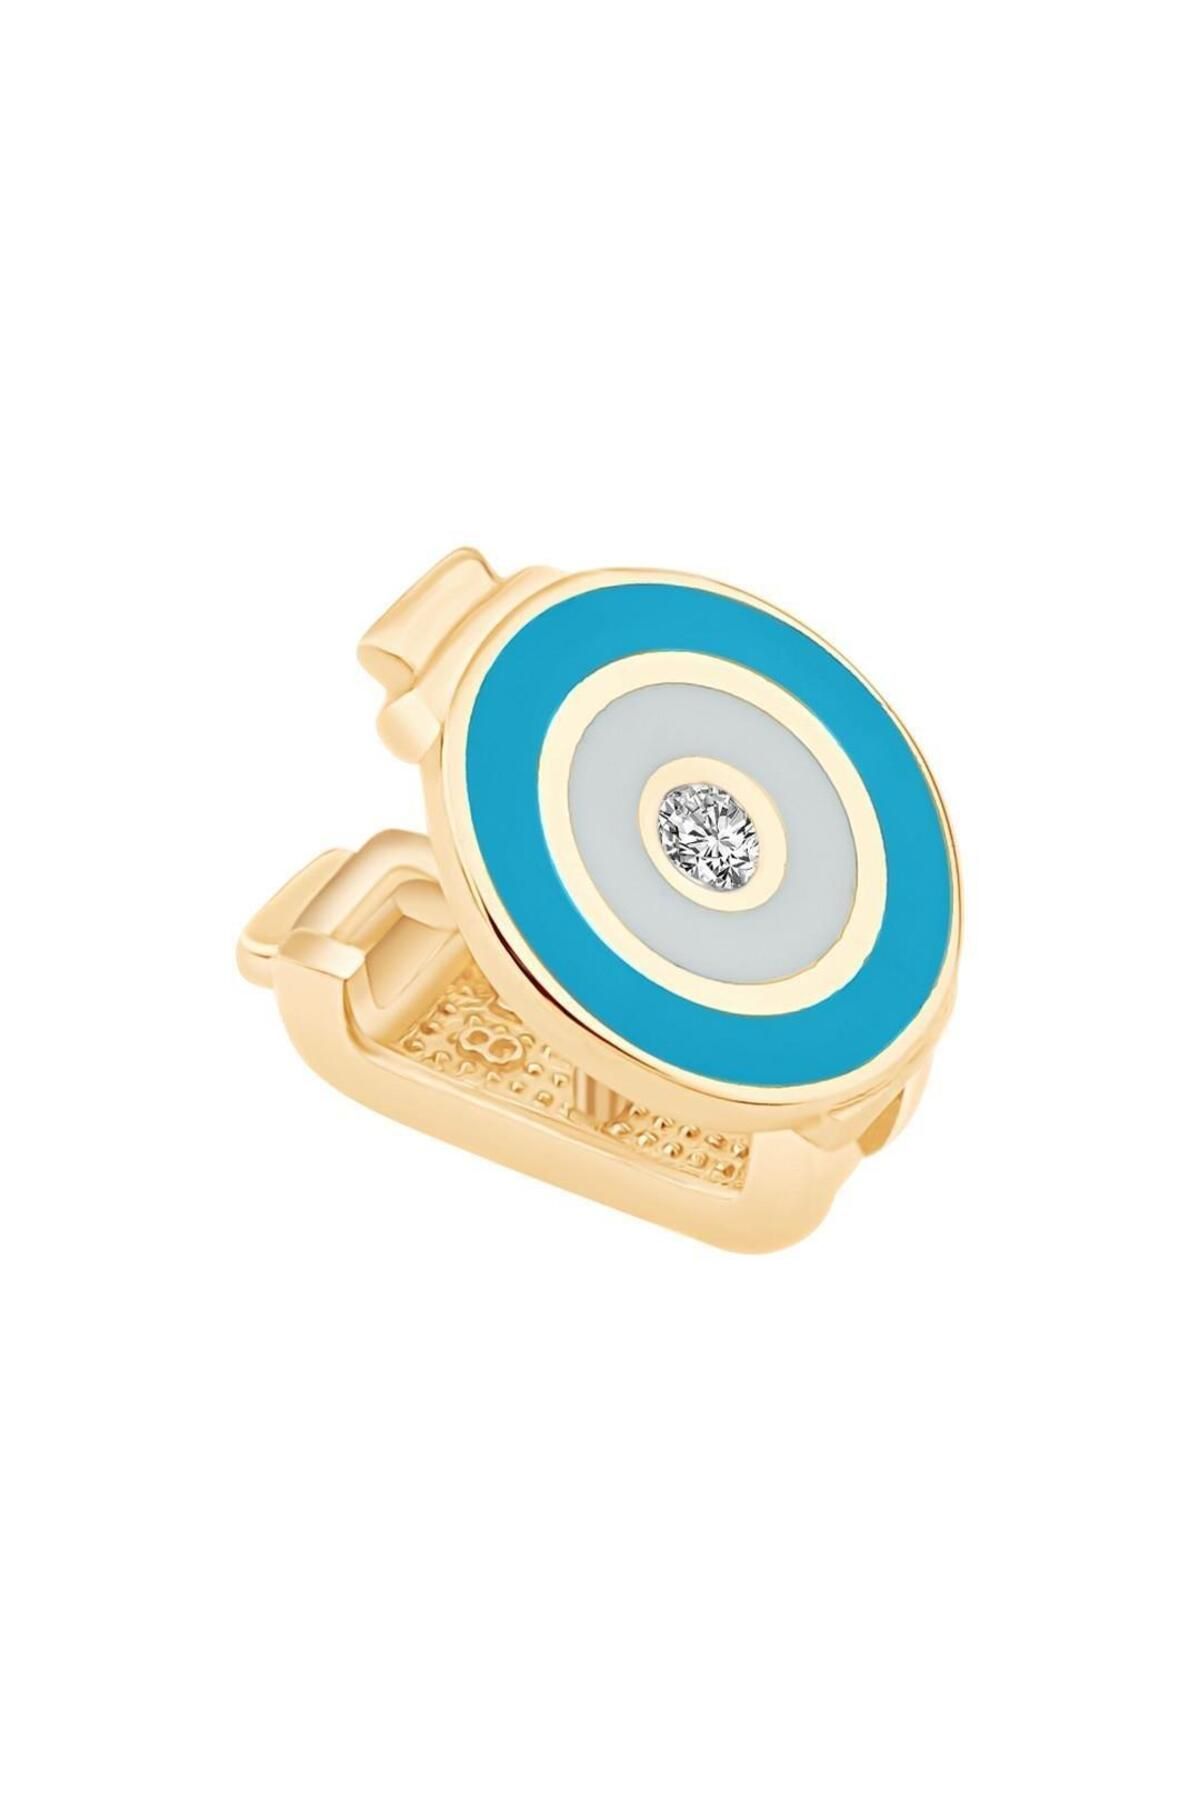 Ema Jewellery Altın Mineli Nazar Boncuğu 9mm Bileklik Charm